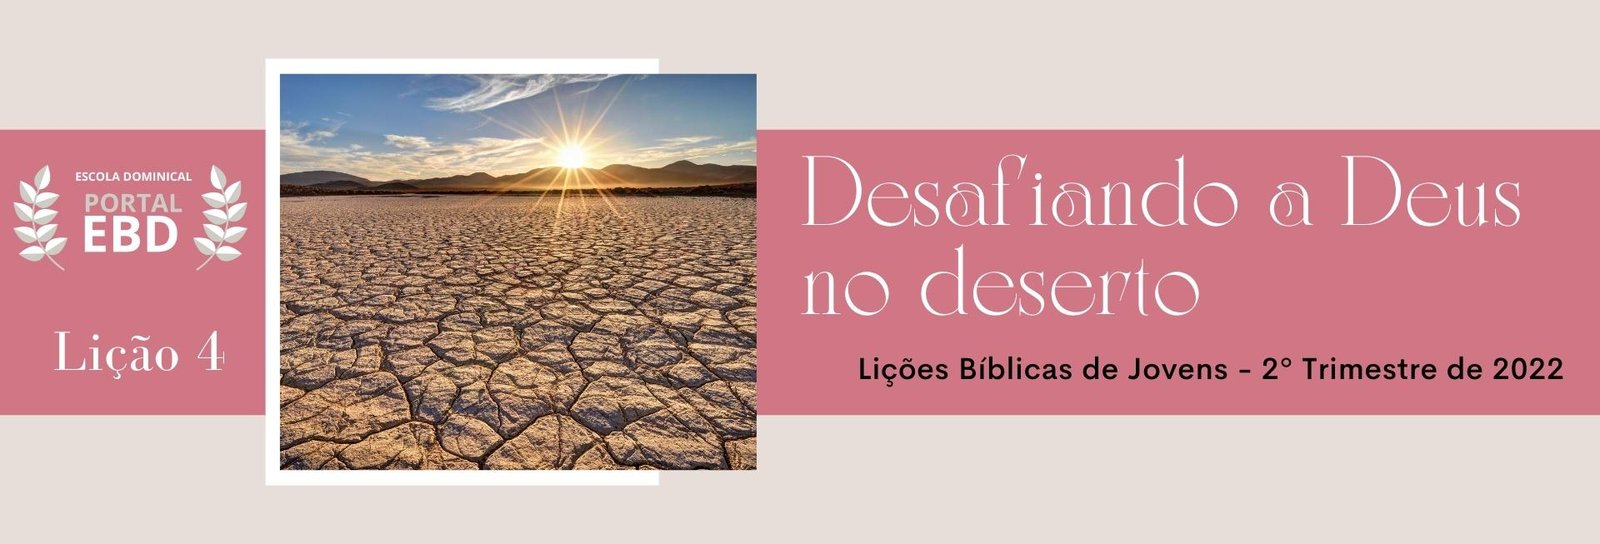 Lição 4 - Desafiando a Deus no deserto I